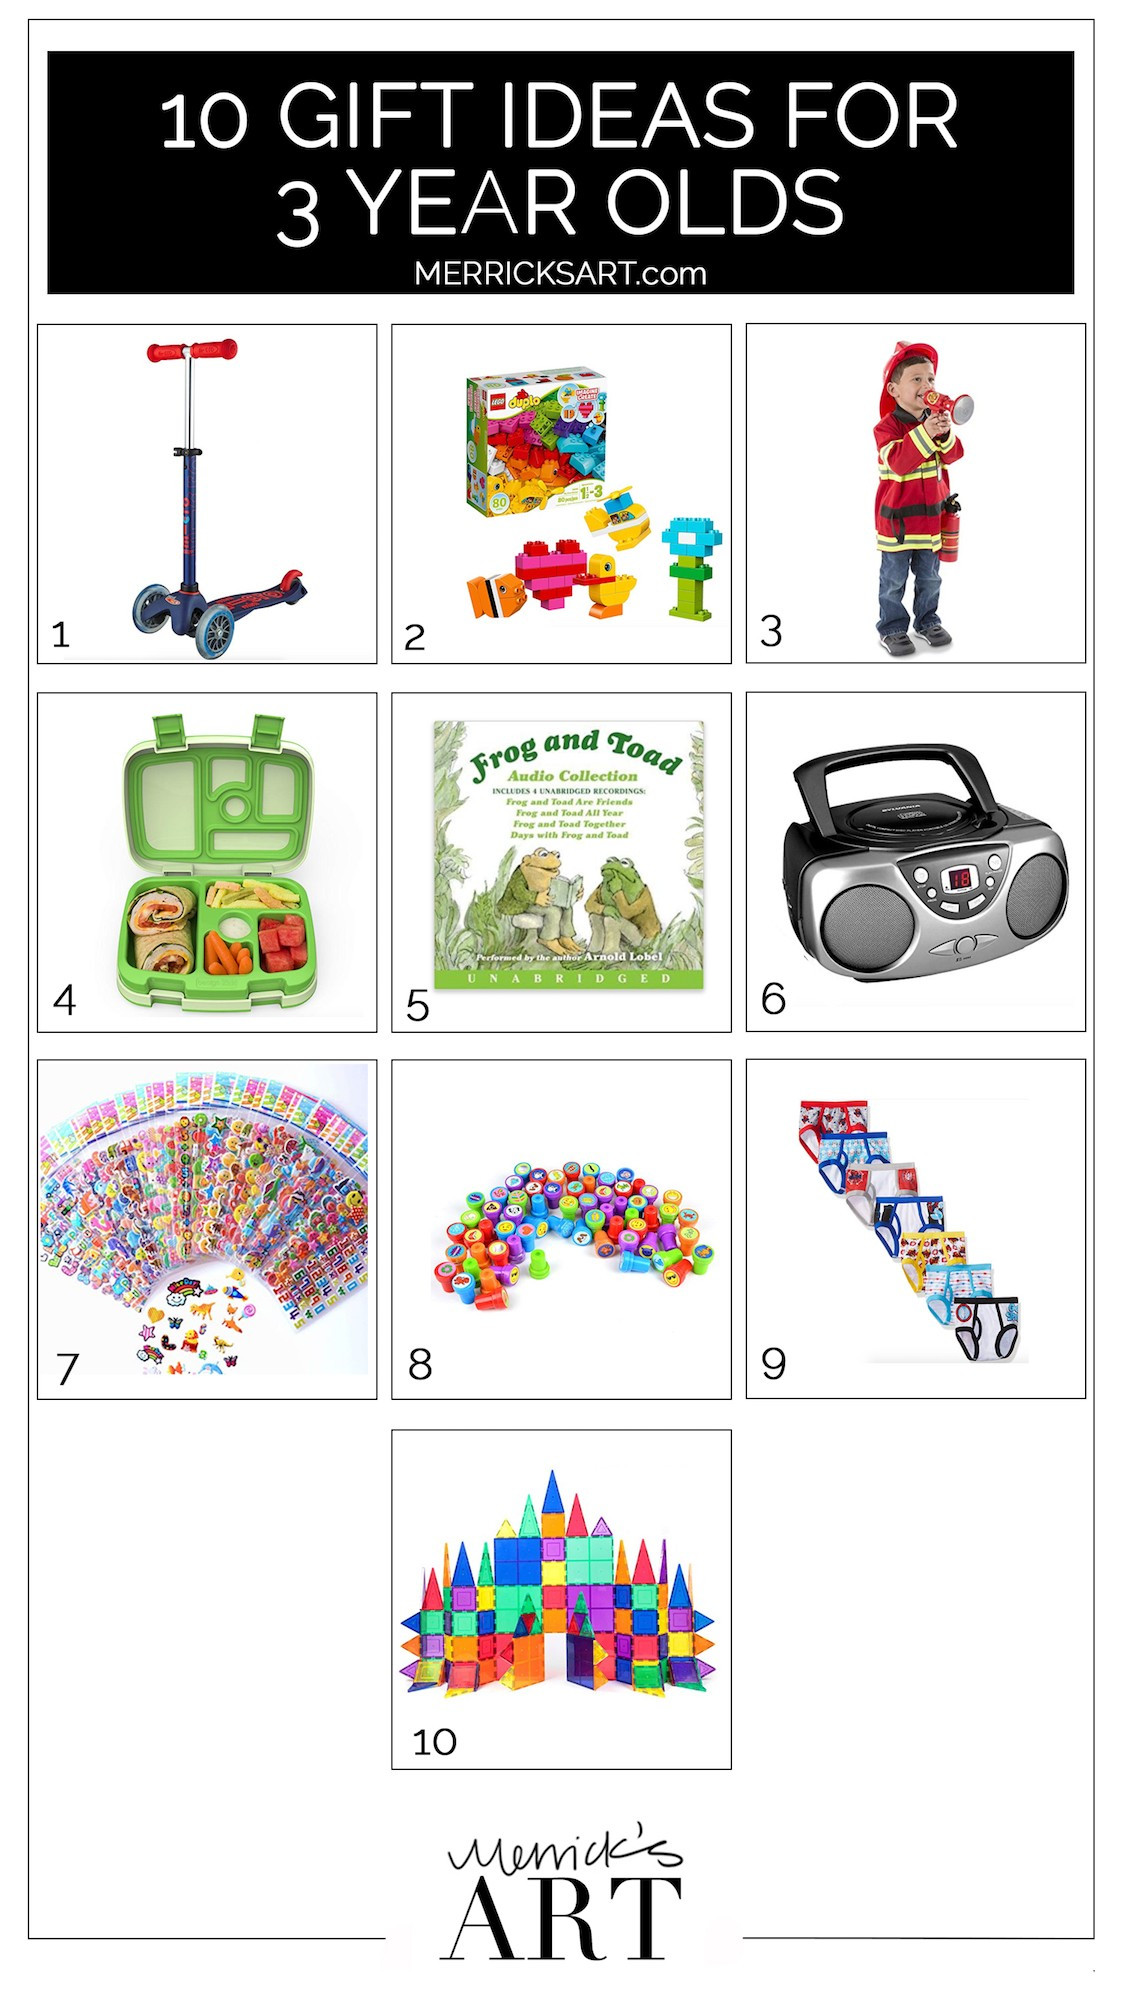 3 Year Old Boy Birthday Gift Ideas
 10 Birthday Gift Ideas for a 3 Year Old Boy